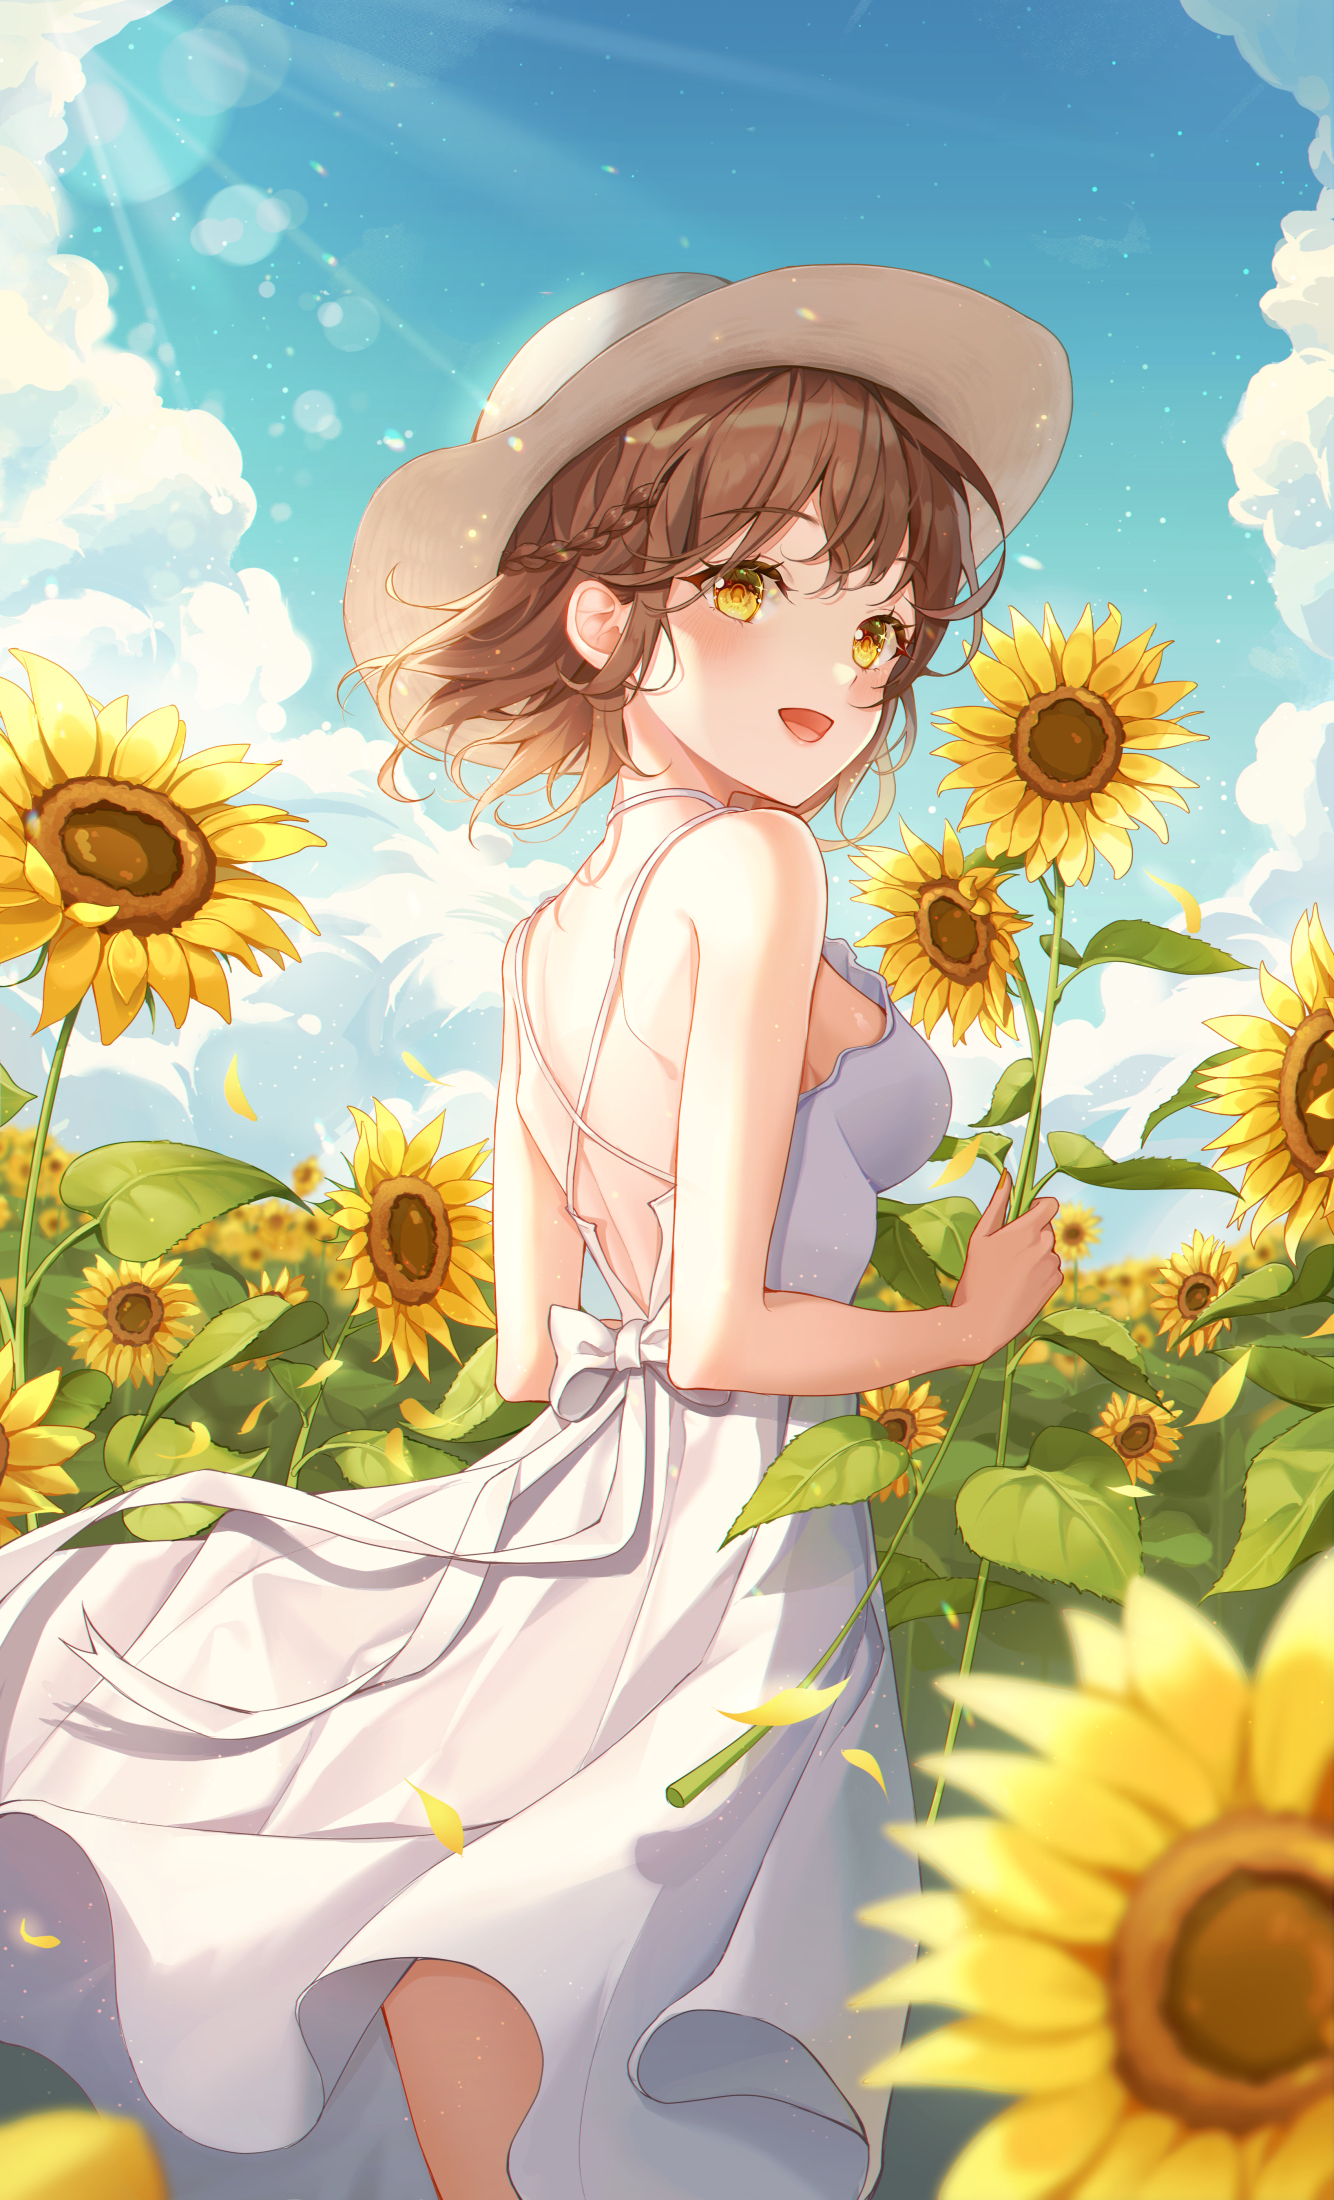 Anime 1334x2200 anime anime girls digital art artwork 2D portrait Tteulrie short hair brunette yellow eyes hat dress sun dress sunflowers bareback